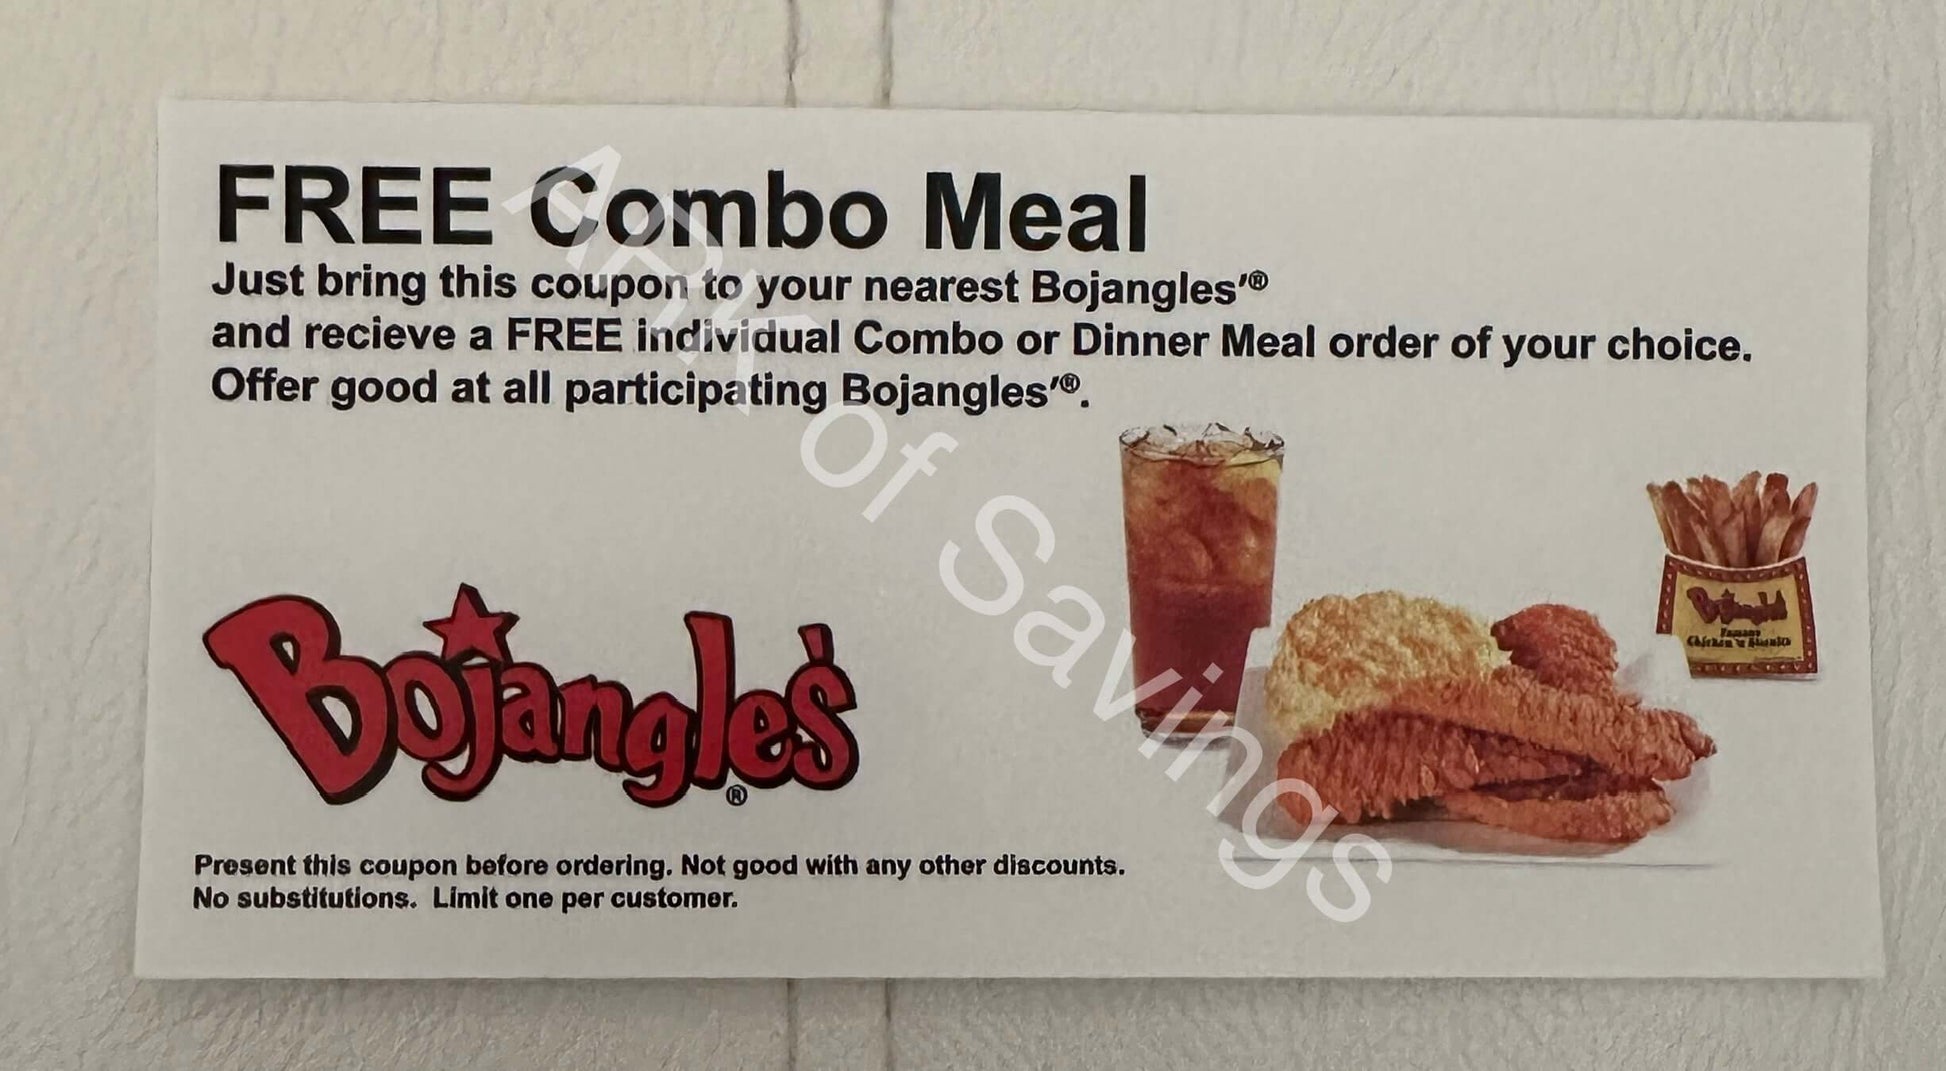 Bojangles Free Combo Meal Coupons No Expiration The ARK of Savings